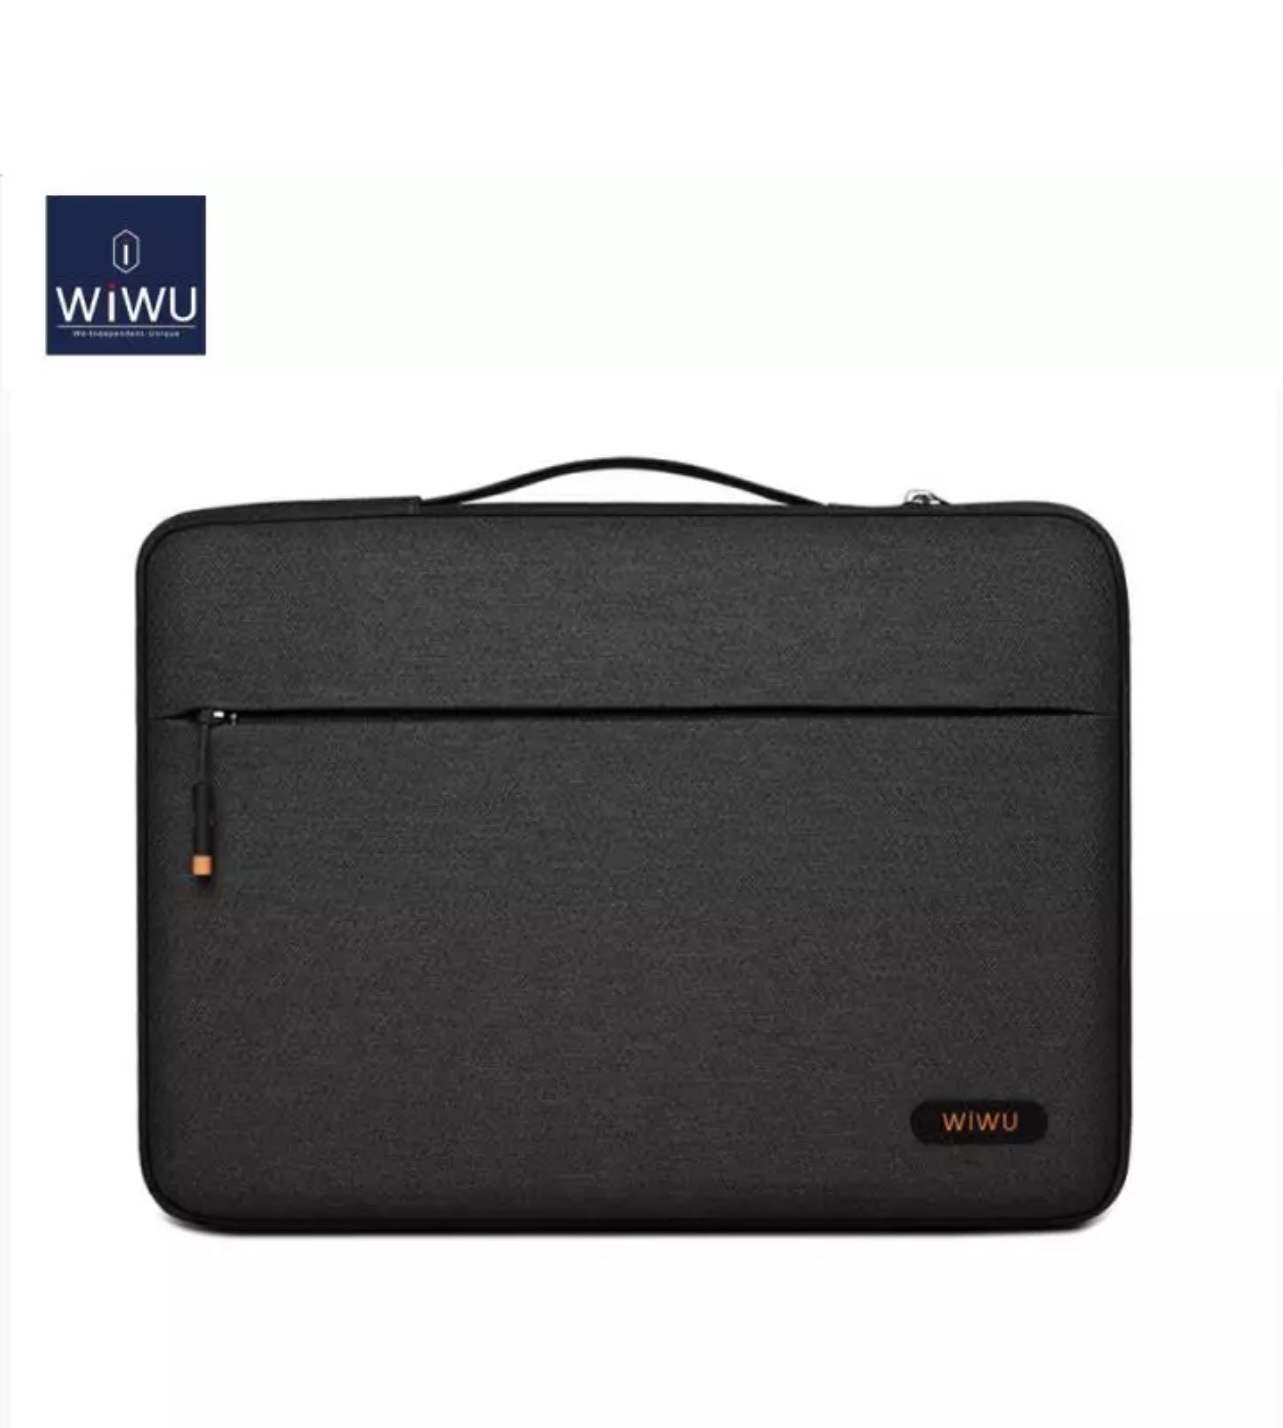 Túi Chống Sốc Wiwu Pilot Laptop Sleeve 13.3 Inch Dành Cho Laptop, Ultrabook Chất Liệu Vải Sợi Cao Cấp - Hàng Chính Hãng